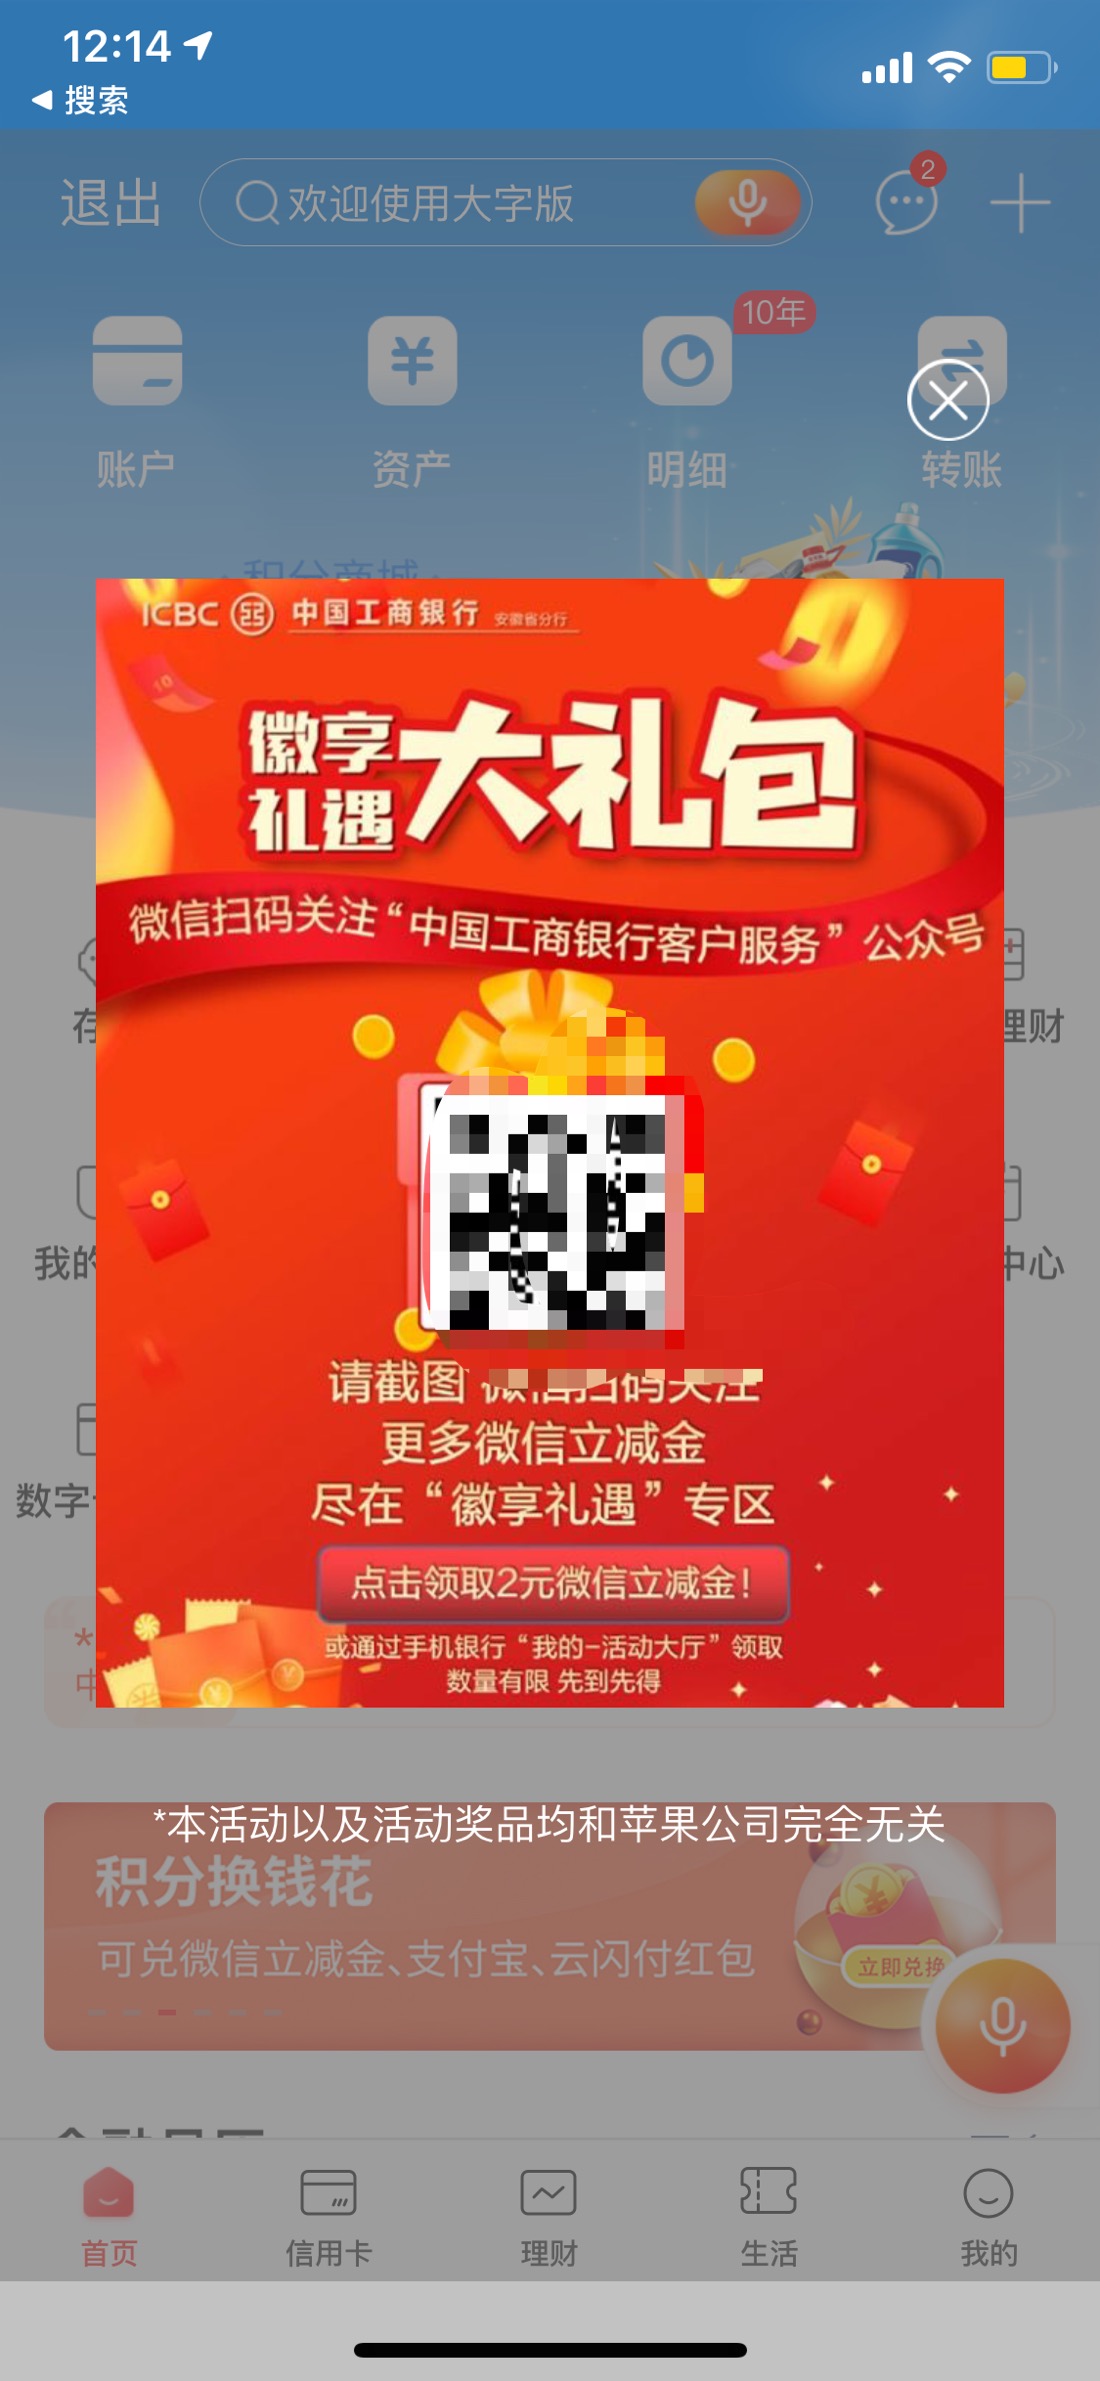 登陆工商银行app自动弹2块钱V.x支付～-惠小助(52huixz.com)